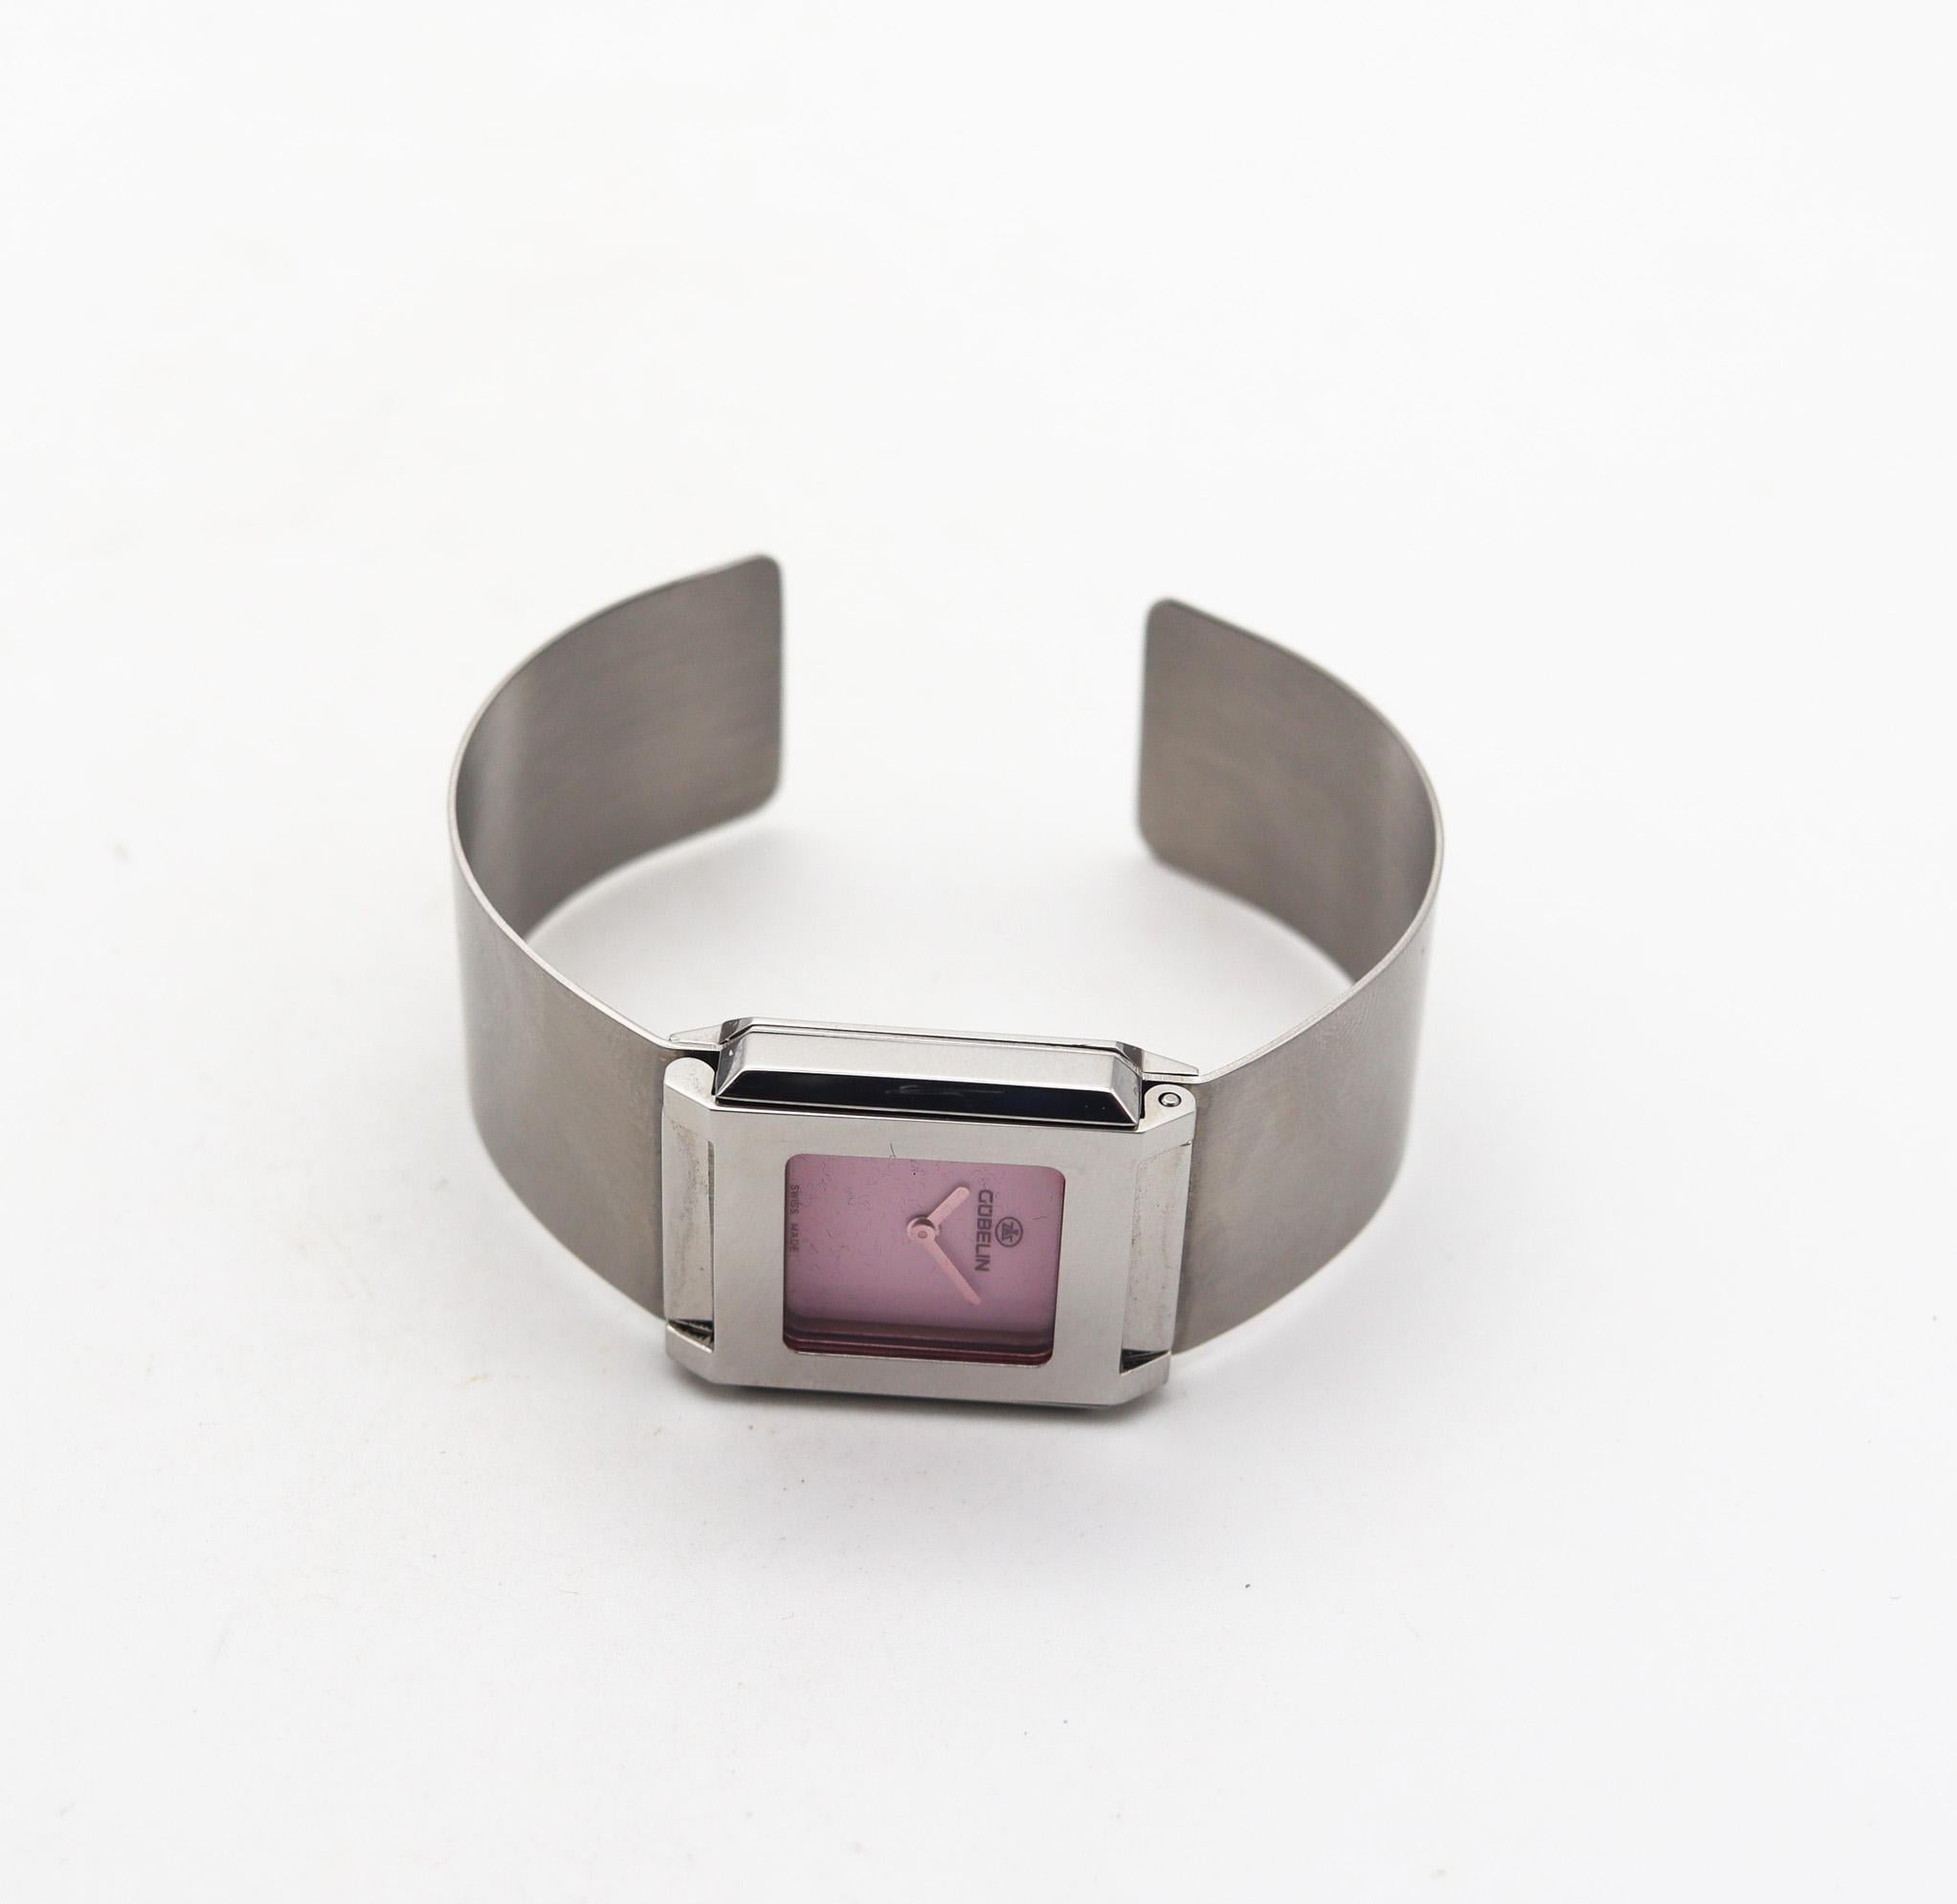 Gubelin Modernist Techno Cuff Bracelet Wrist Watch In Stainless Steel For Sale 4